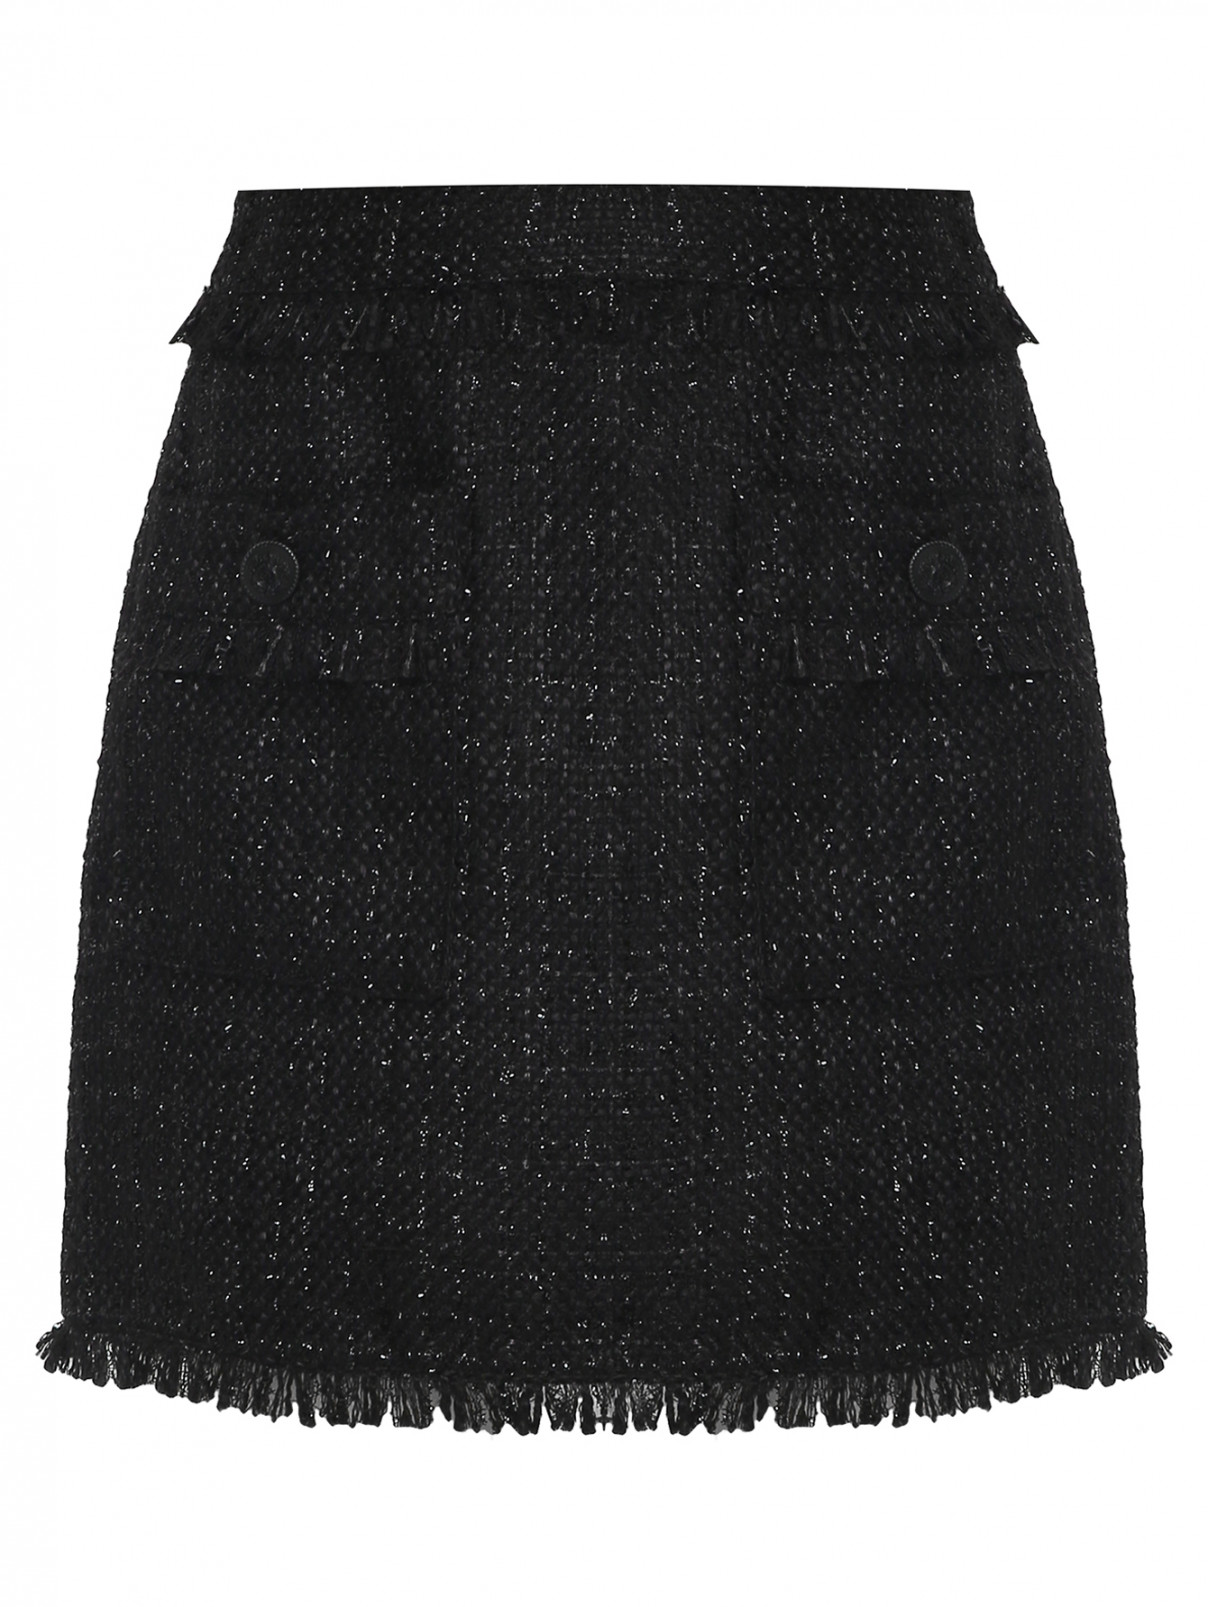 Юбка-мини с бахрамой и карманами Essentiel Antwerp  –  Общий вид  – Цвет:  Черный